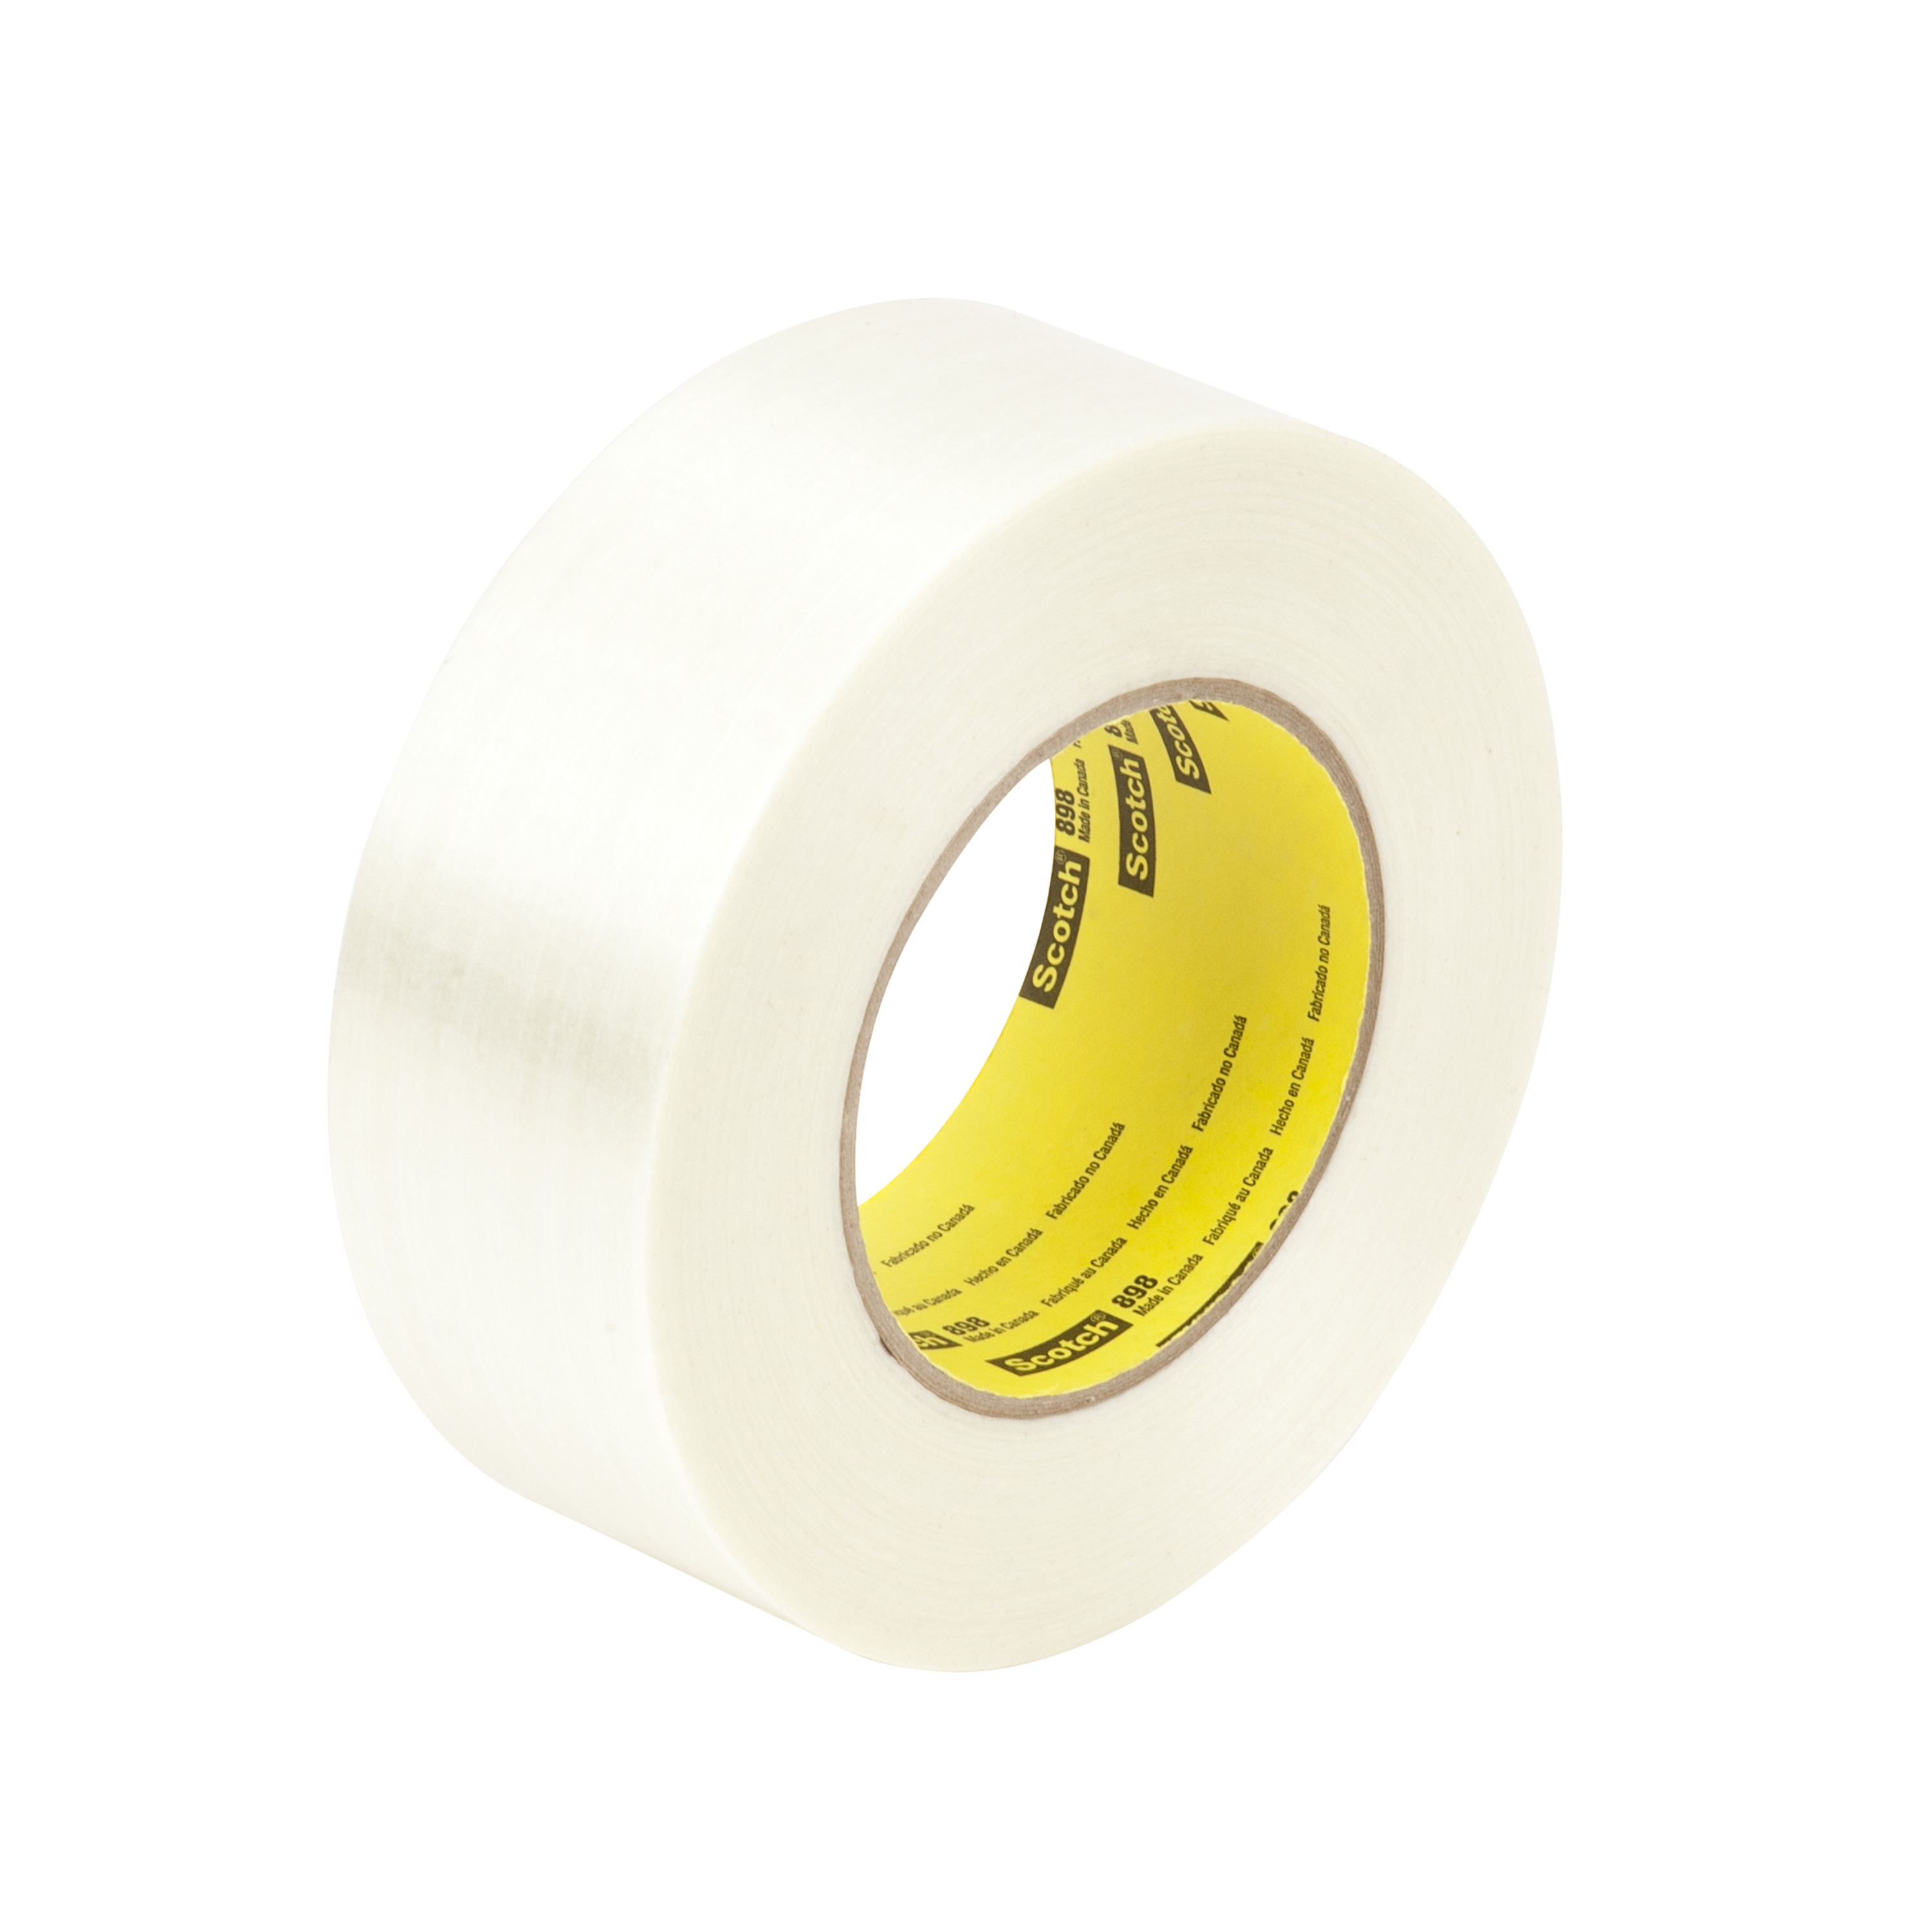 Scotch® Filament Tape 898, Clear, 72 mm x 55 m, 6.6 mil, 12 rolls per
case